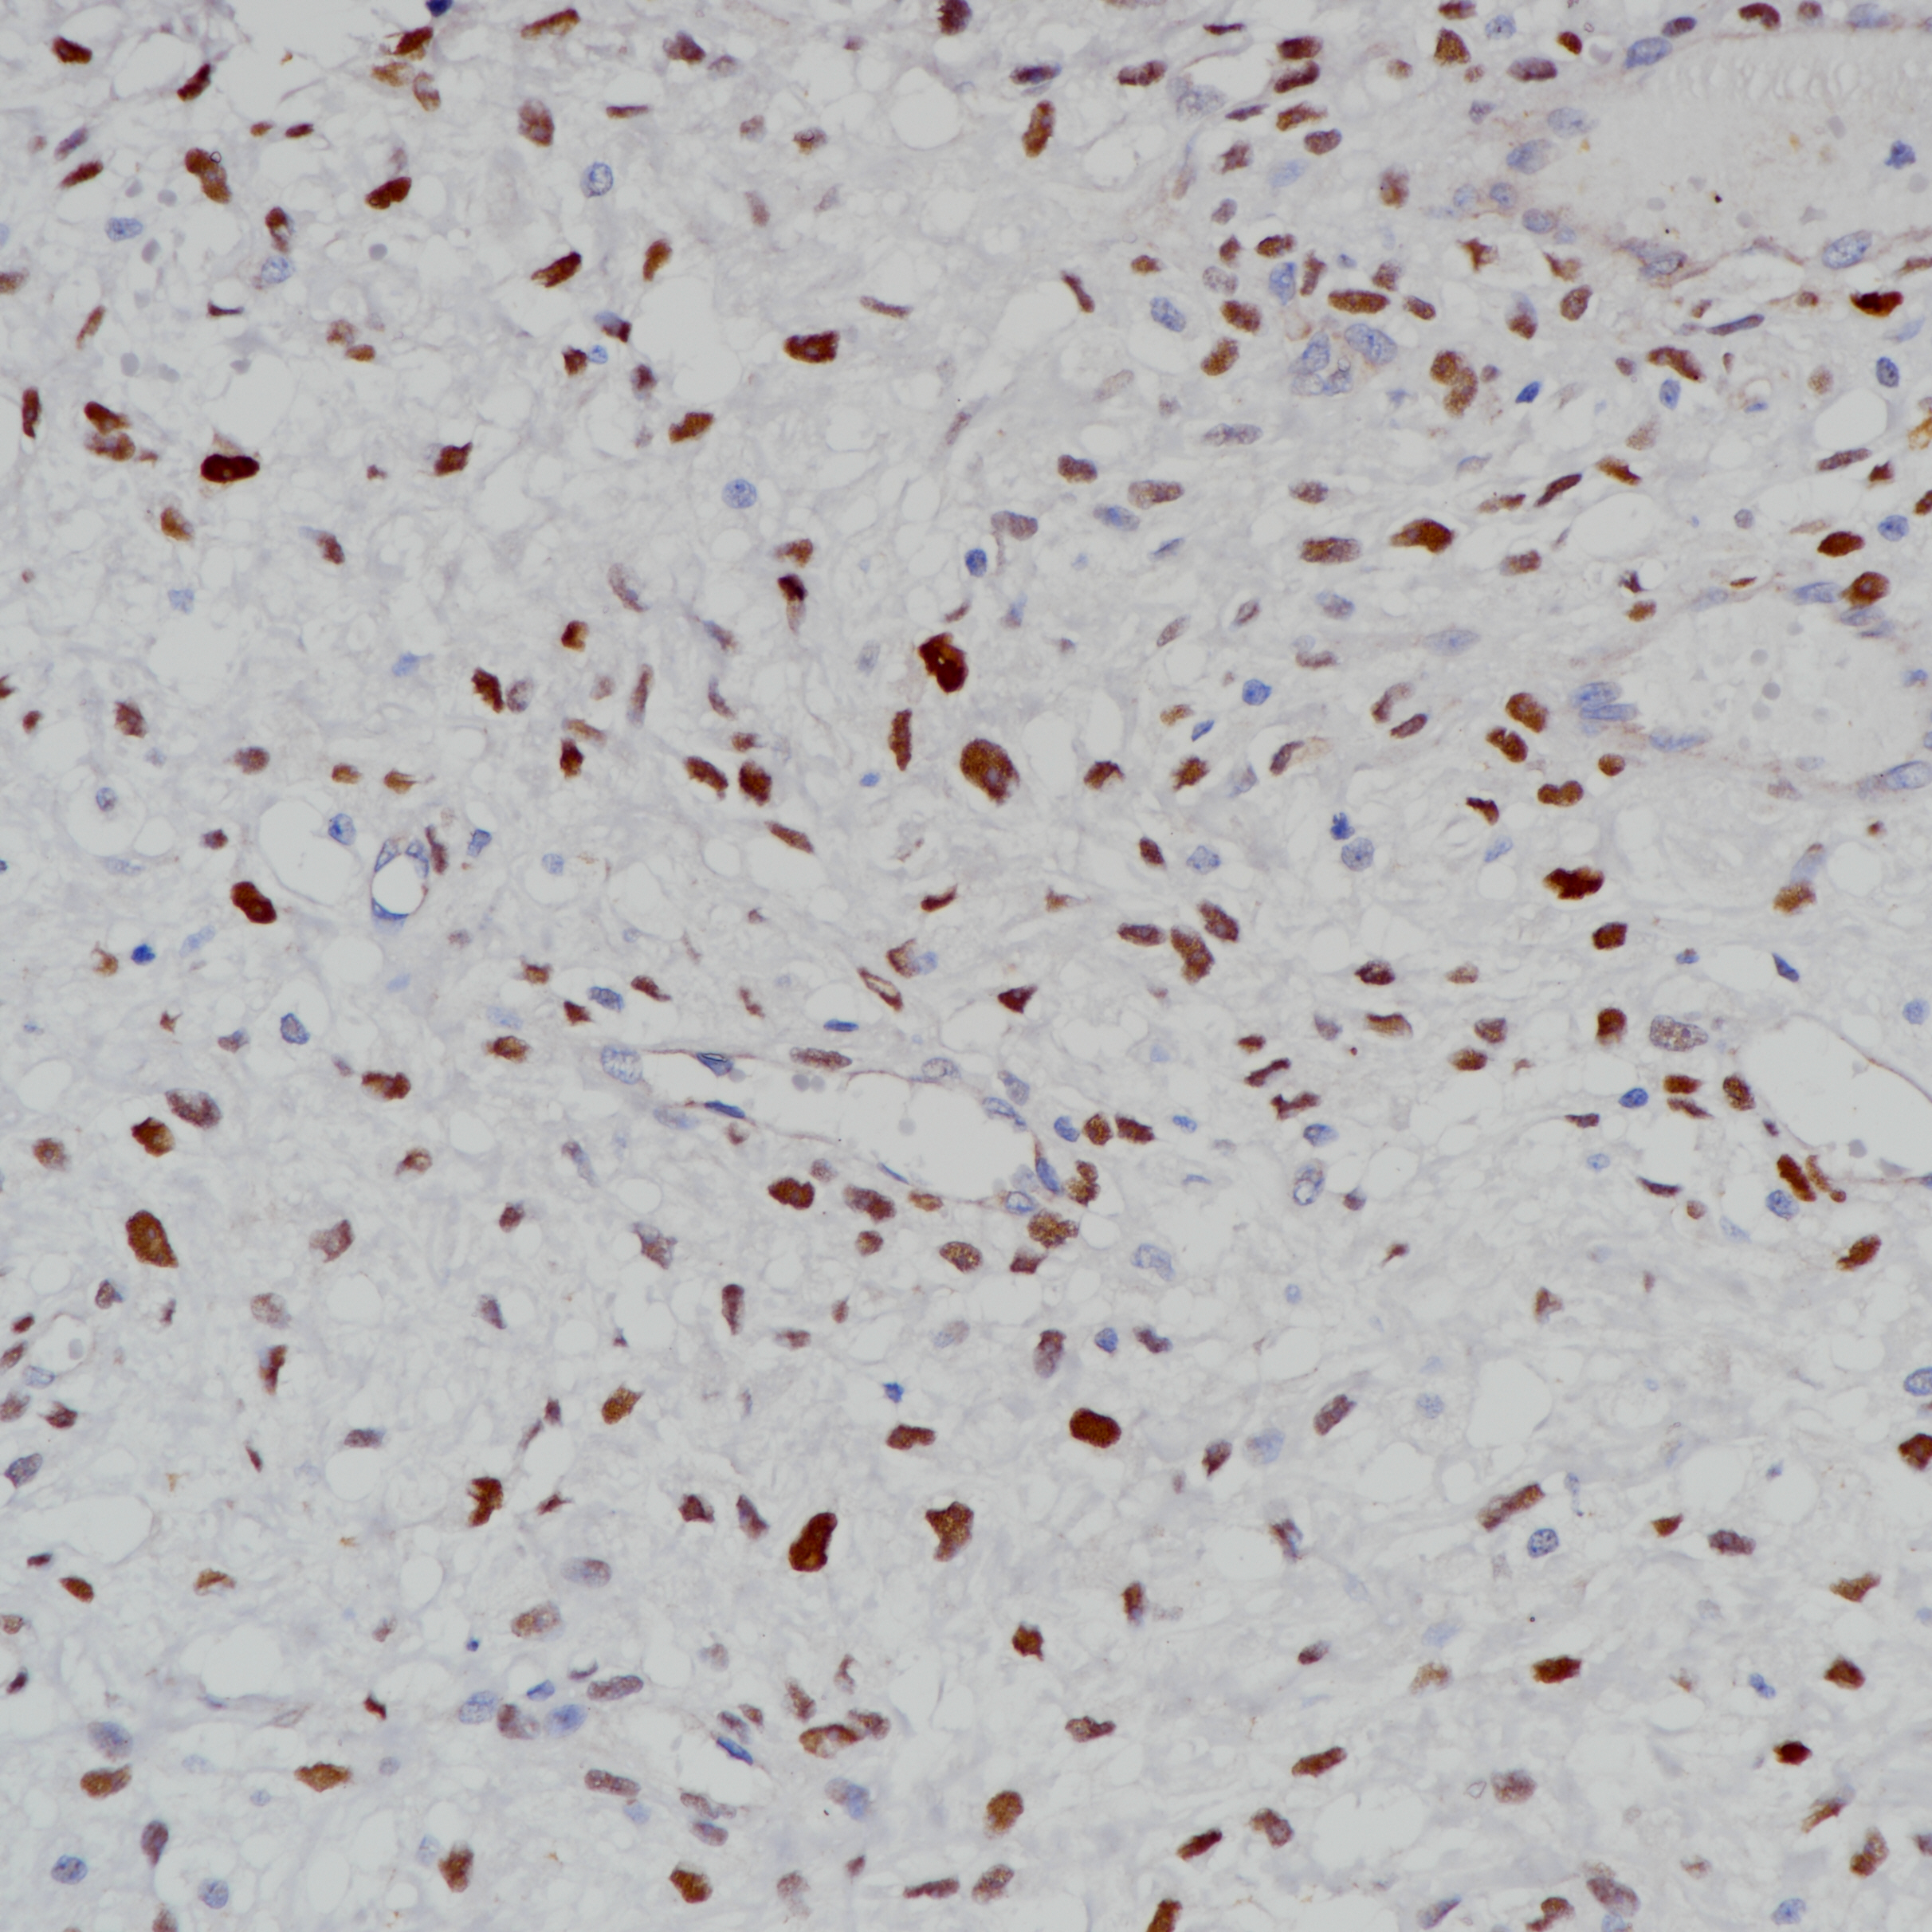 脂肪肉瘤MDM2（BP6203）染色